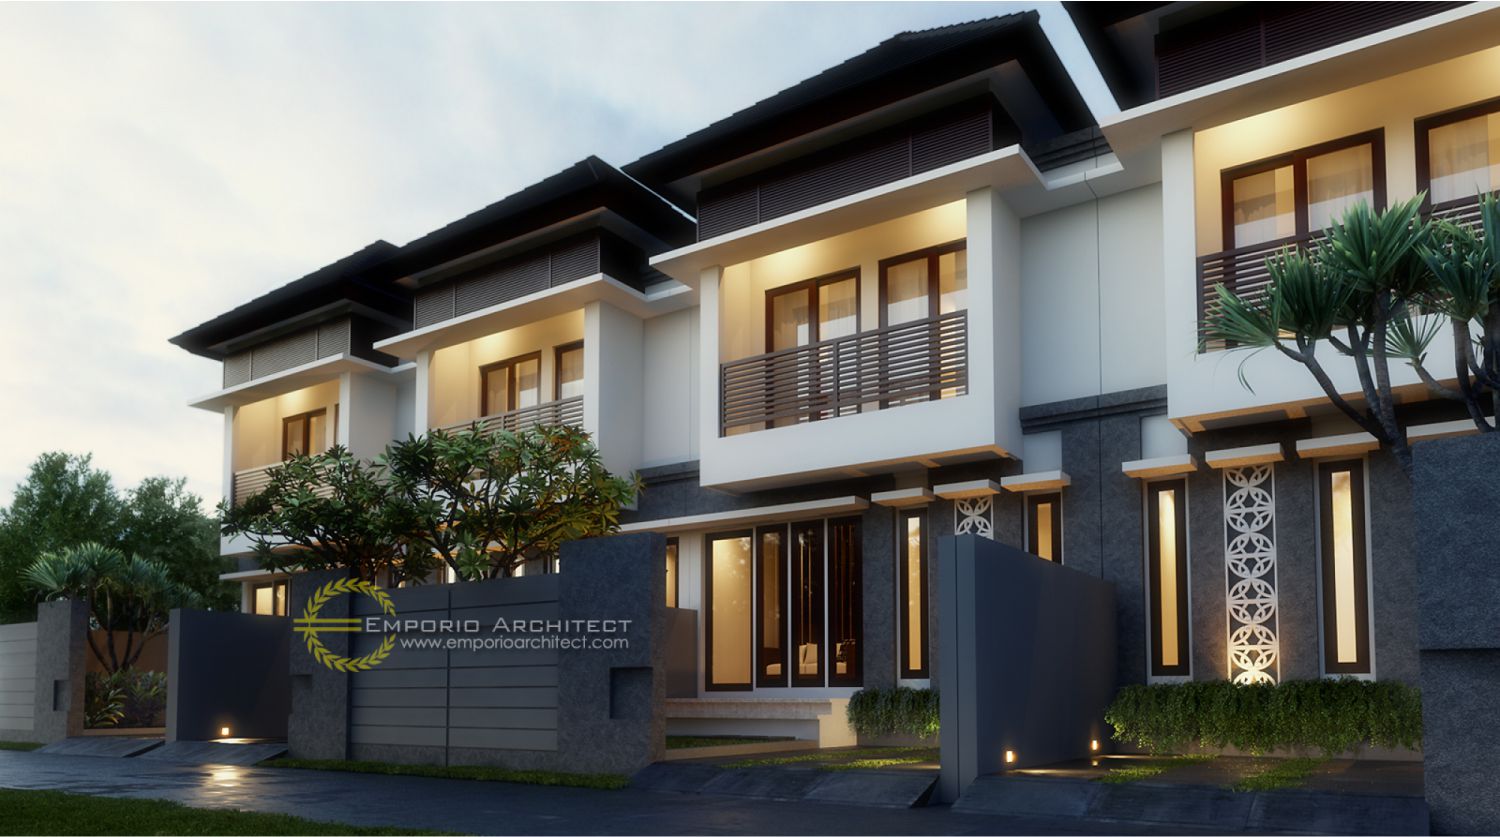  Desain Rumah Nuansa Bali  Mabudi com